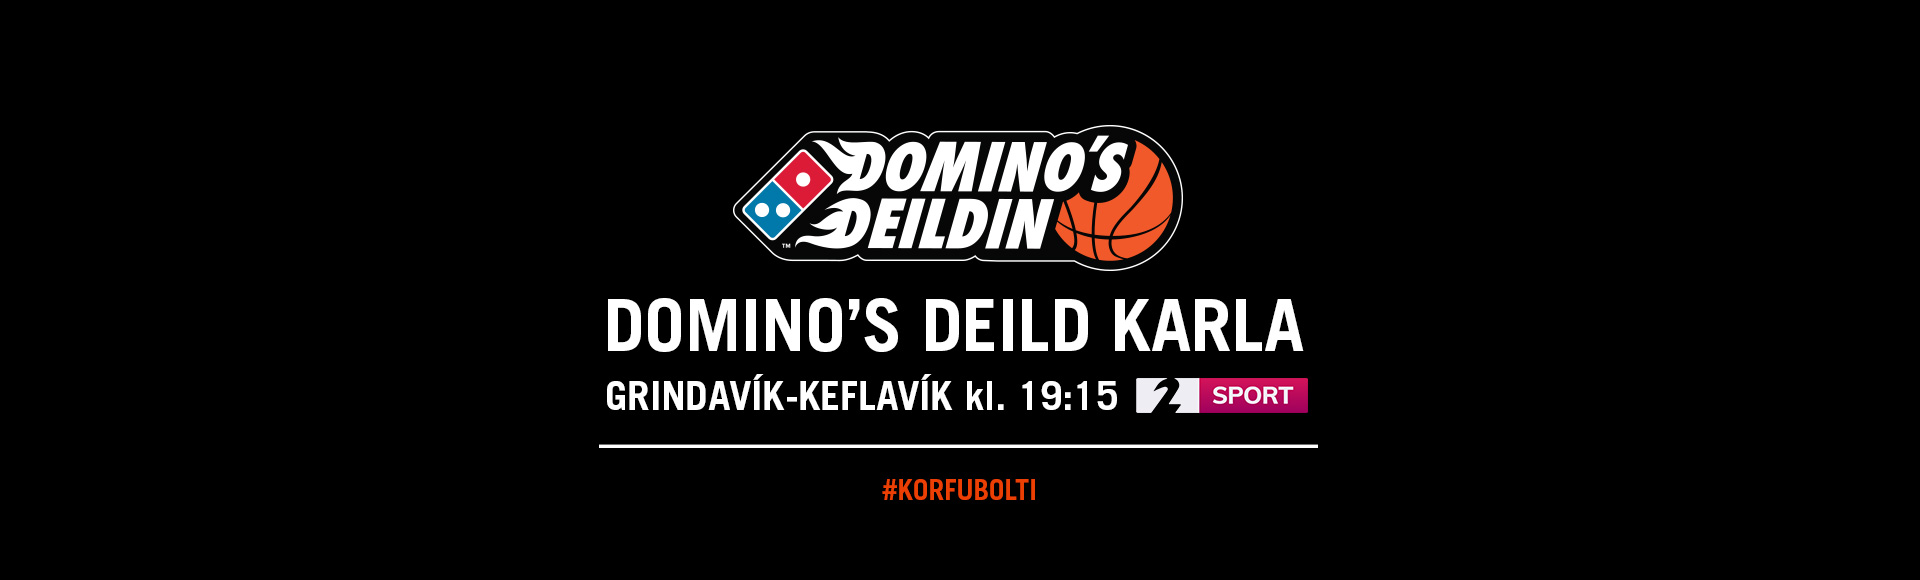 Domino's deild karla í kvöld · Grindavík-Keflavík í beinni á Stöð 2 Sport